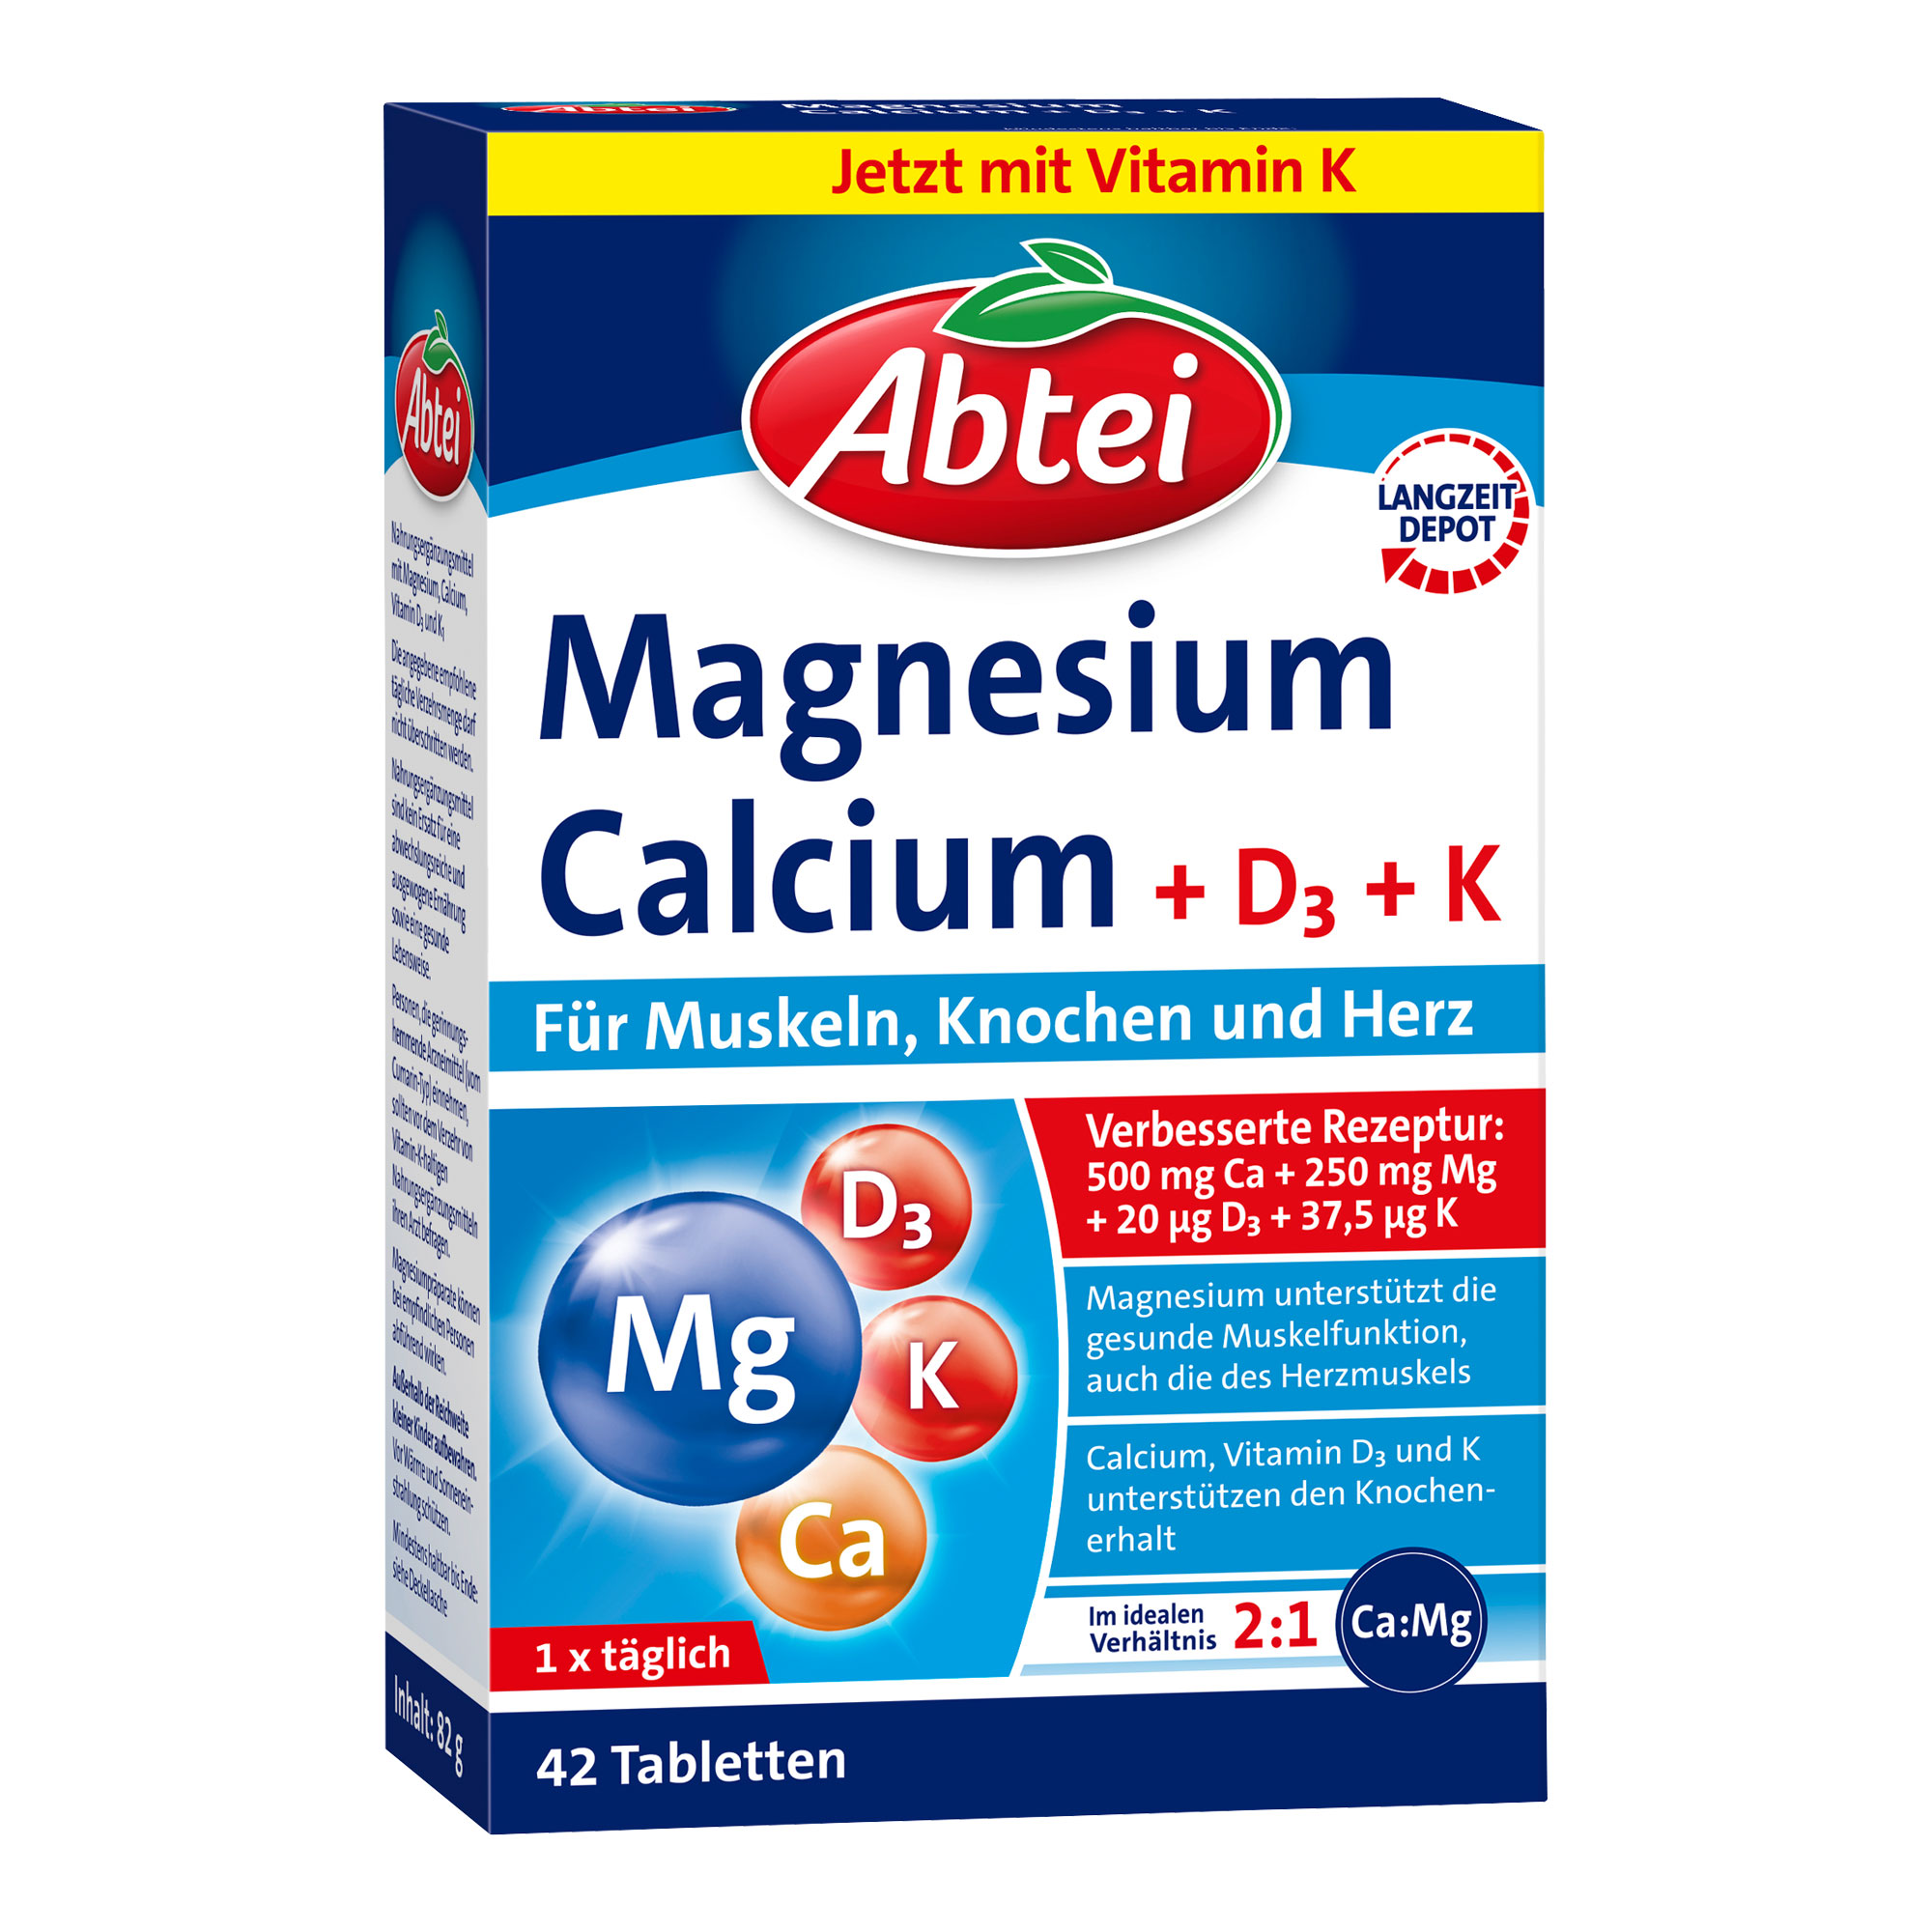 Nahrungsergänzungsmittel mit Magnesium, Calcium, Vitamin D3 und K1.